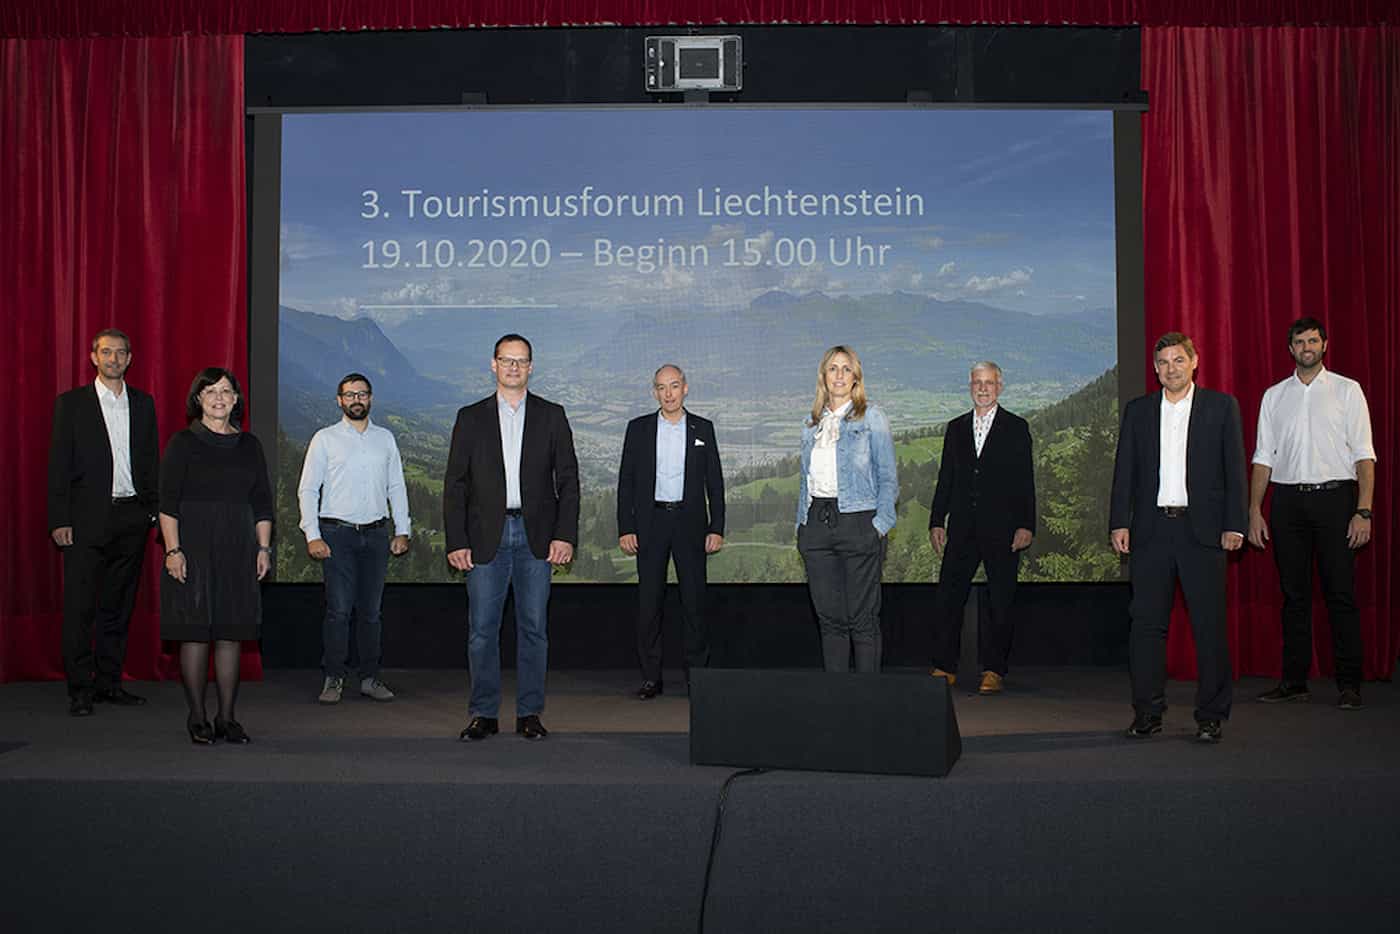 3. Tourismusforum Liechtenstein